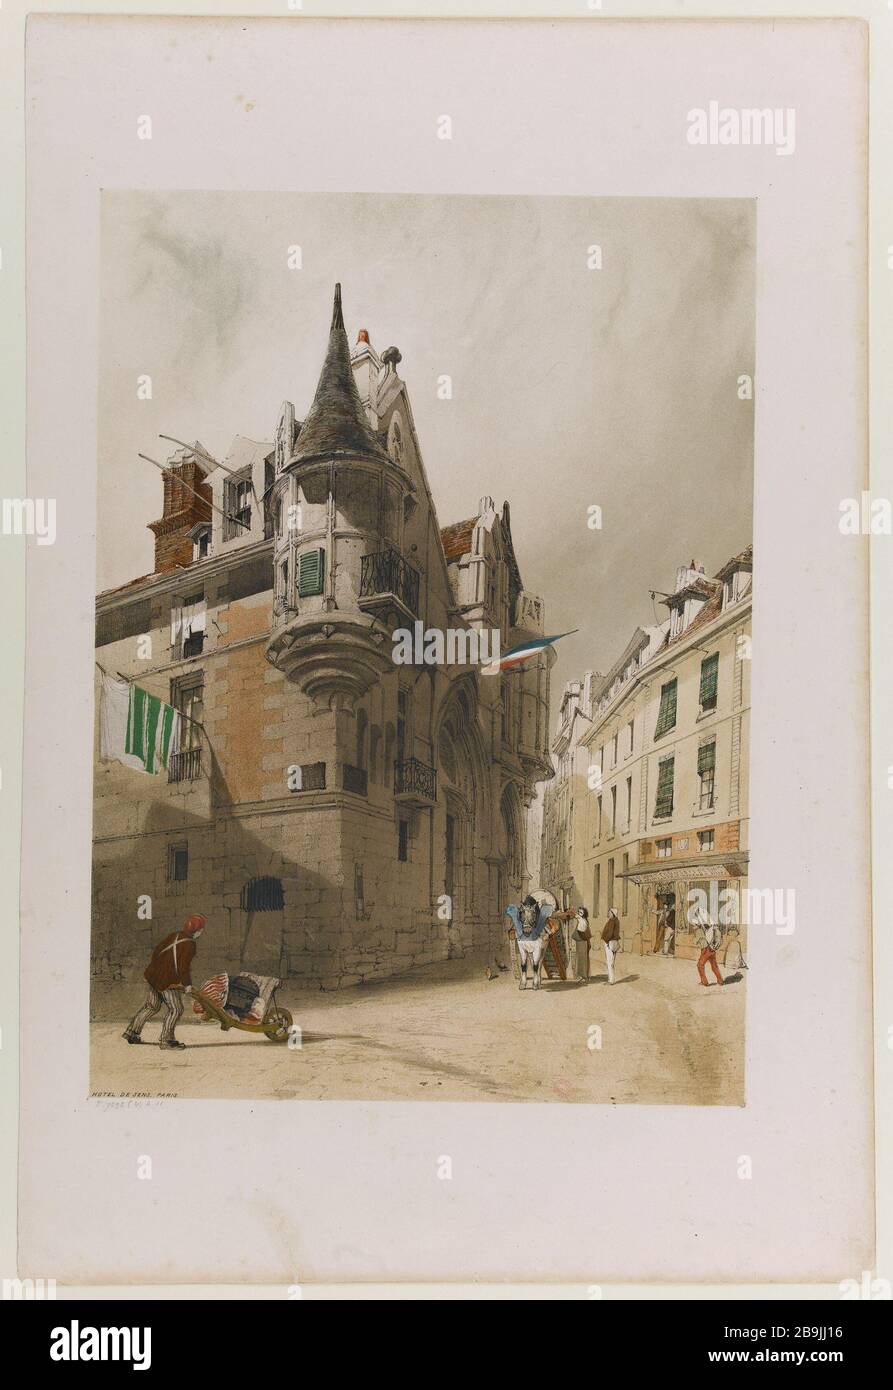 Hôtel Sense Thomas Shotter Boys (1803-1874). 'Hôtel de sens', Paris (IVème arr.) Gravure (lithographie couleur). Paris, musée Carnavalet. Banque D'Images